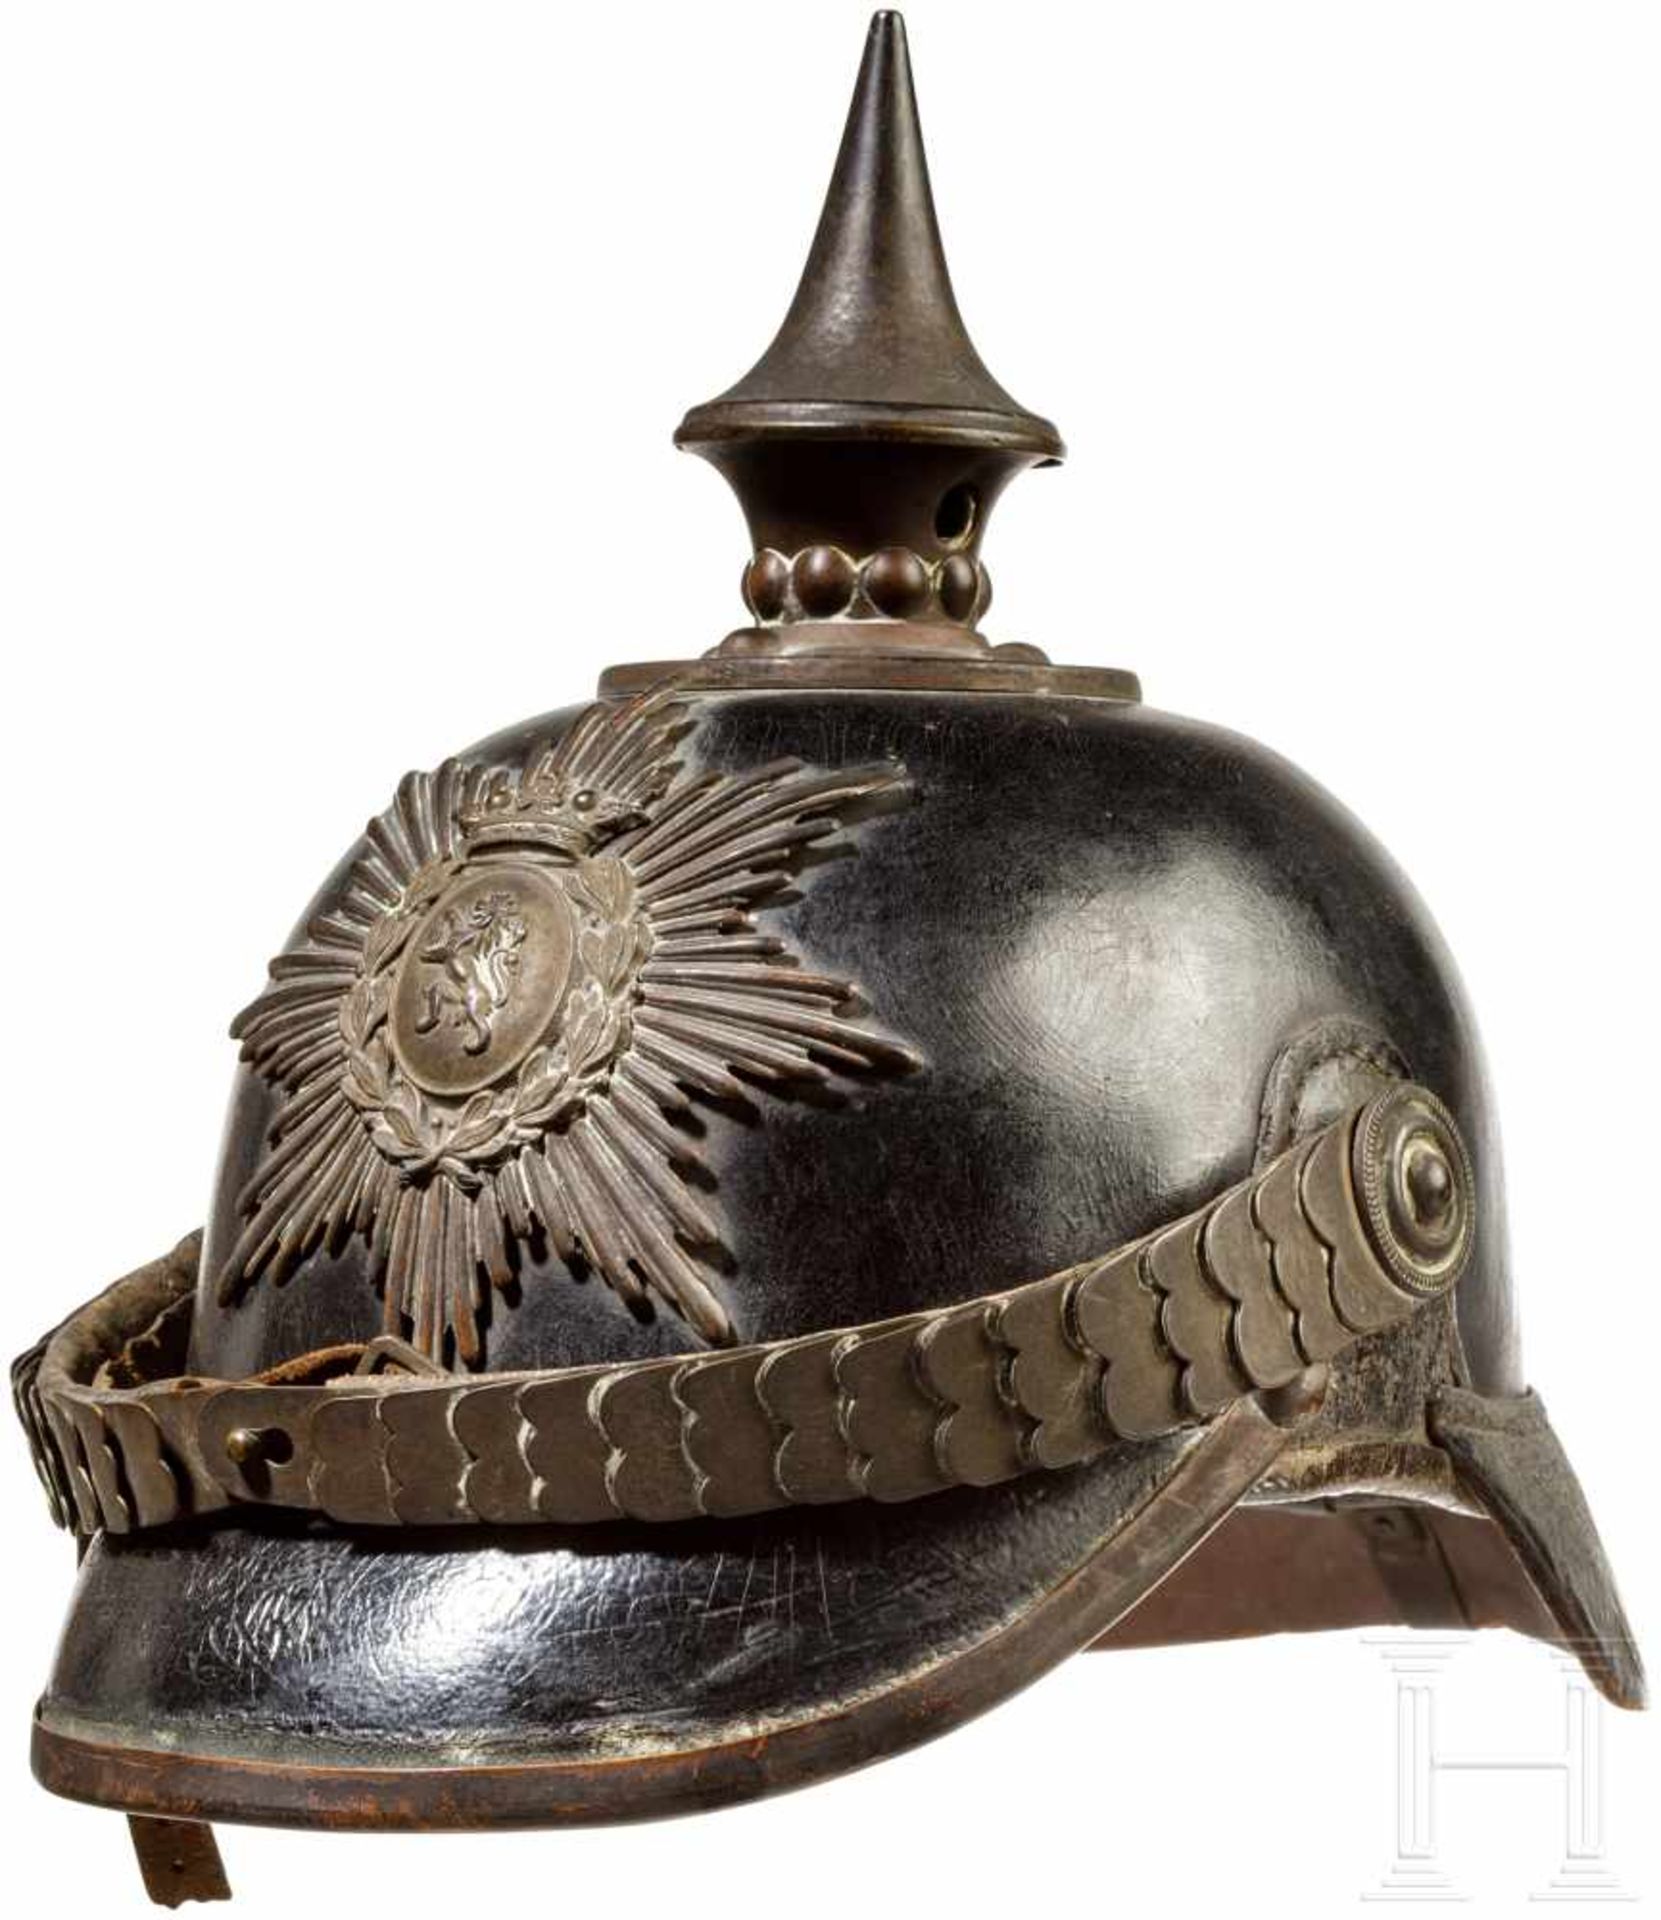 Helm für Angehörige der altenburgischen Haustruppen, um 1900Schwarz lackierte Lederglocke mit rundem